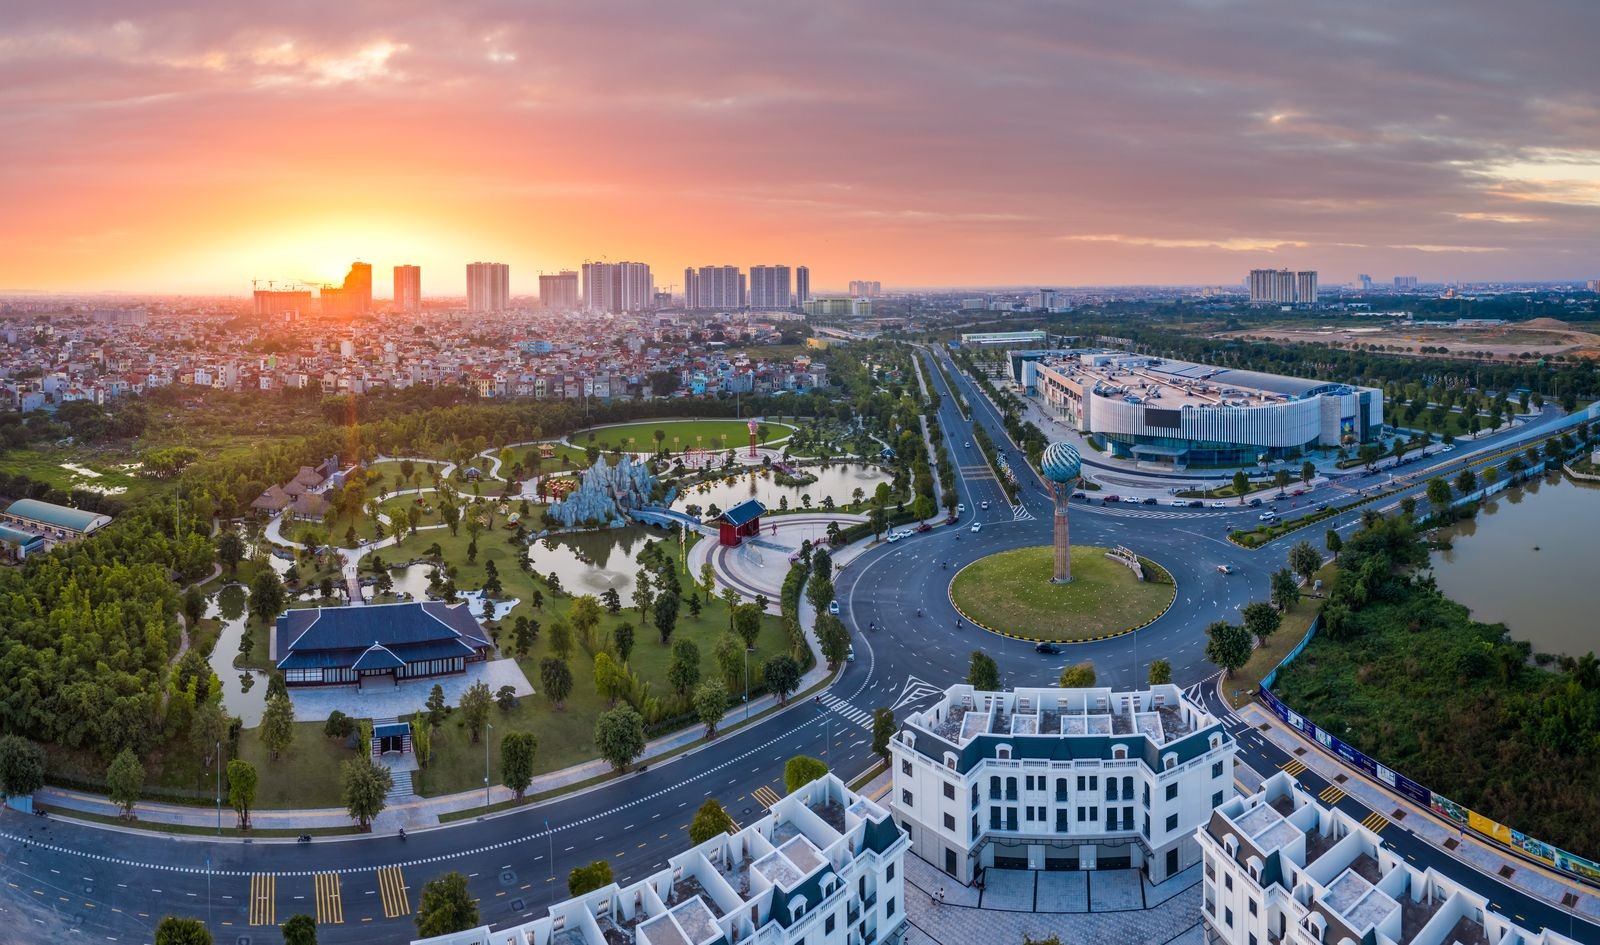 Vinhomes Smart City là đại đô thị hút khách bậc nhất Hà Nội hiện nay nhờ quy hoạch đồng bộ, hệ tiện ích đáp ứng “360 độ nhu cầu” của khách hàng, đặc biệt là khách quốc tế